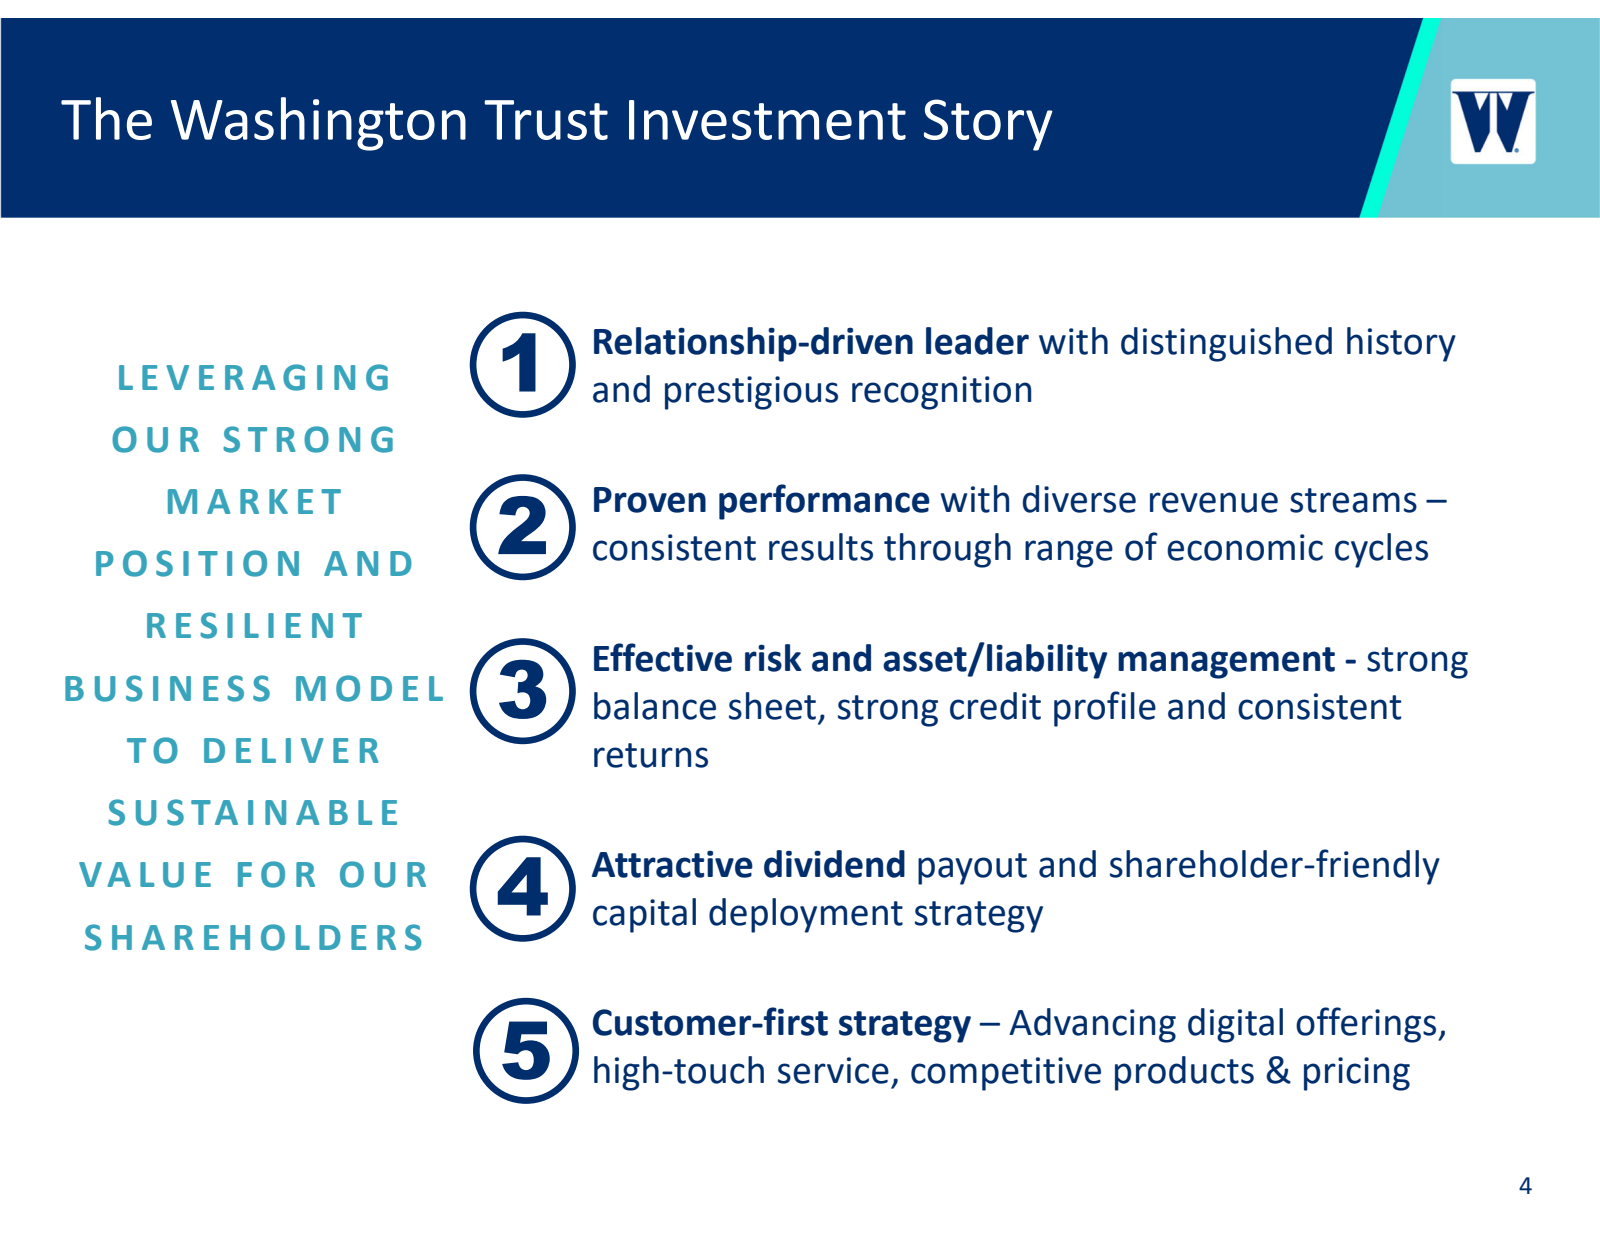 The Washington Trust